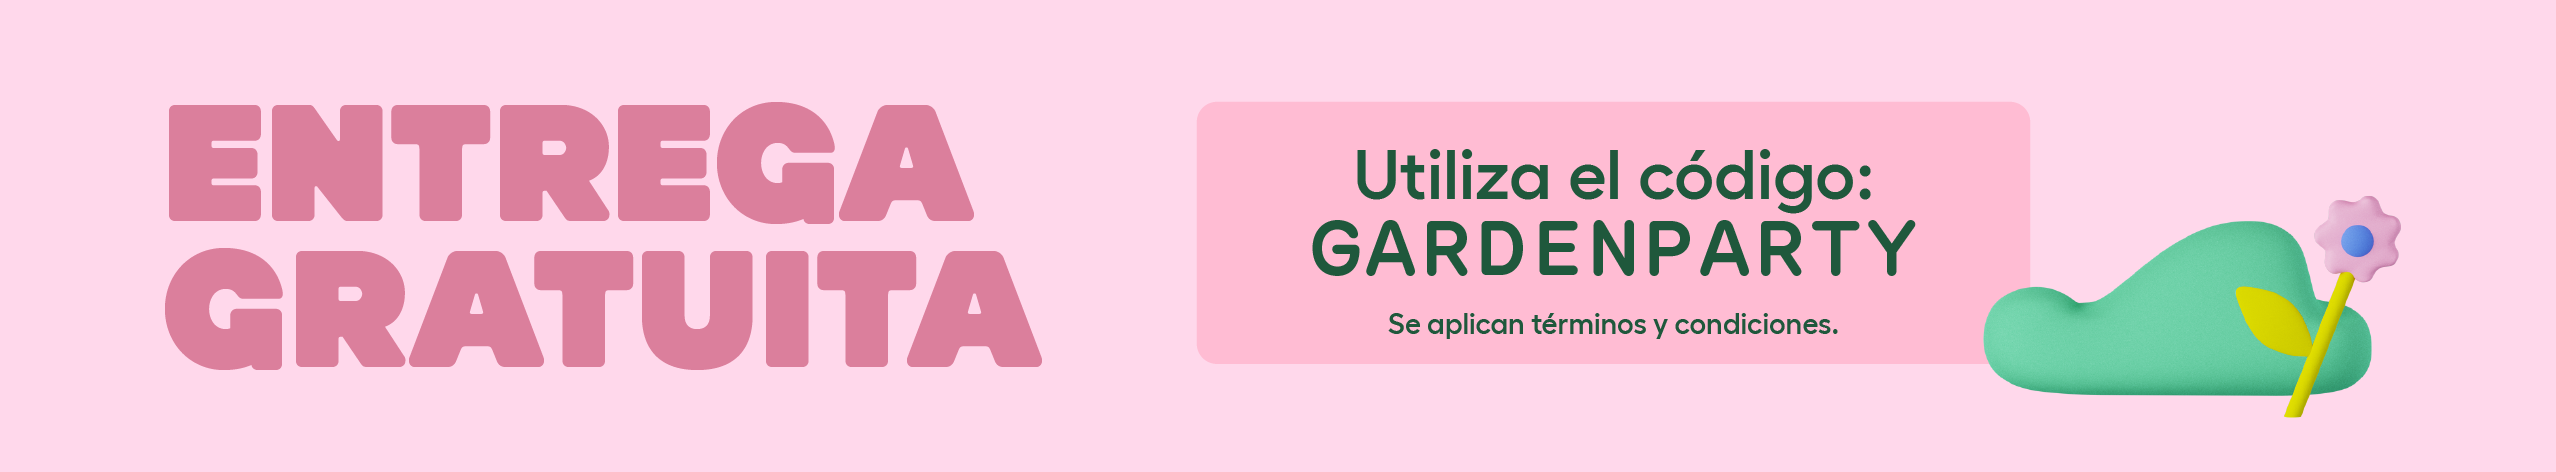 Omlet Garden Party - Entrega gratuita en gallineros y zonas de paso de Eglu